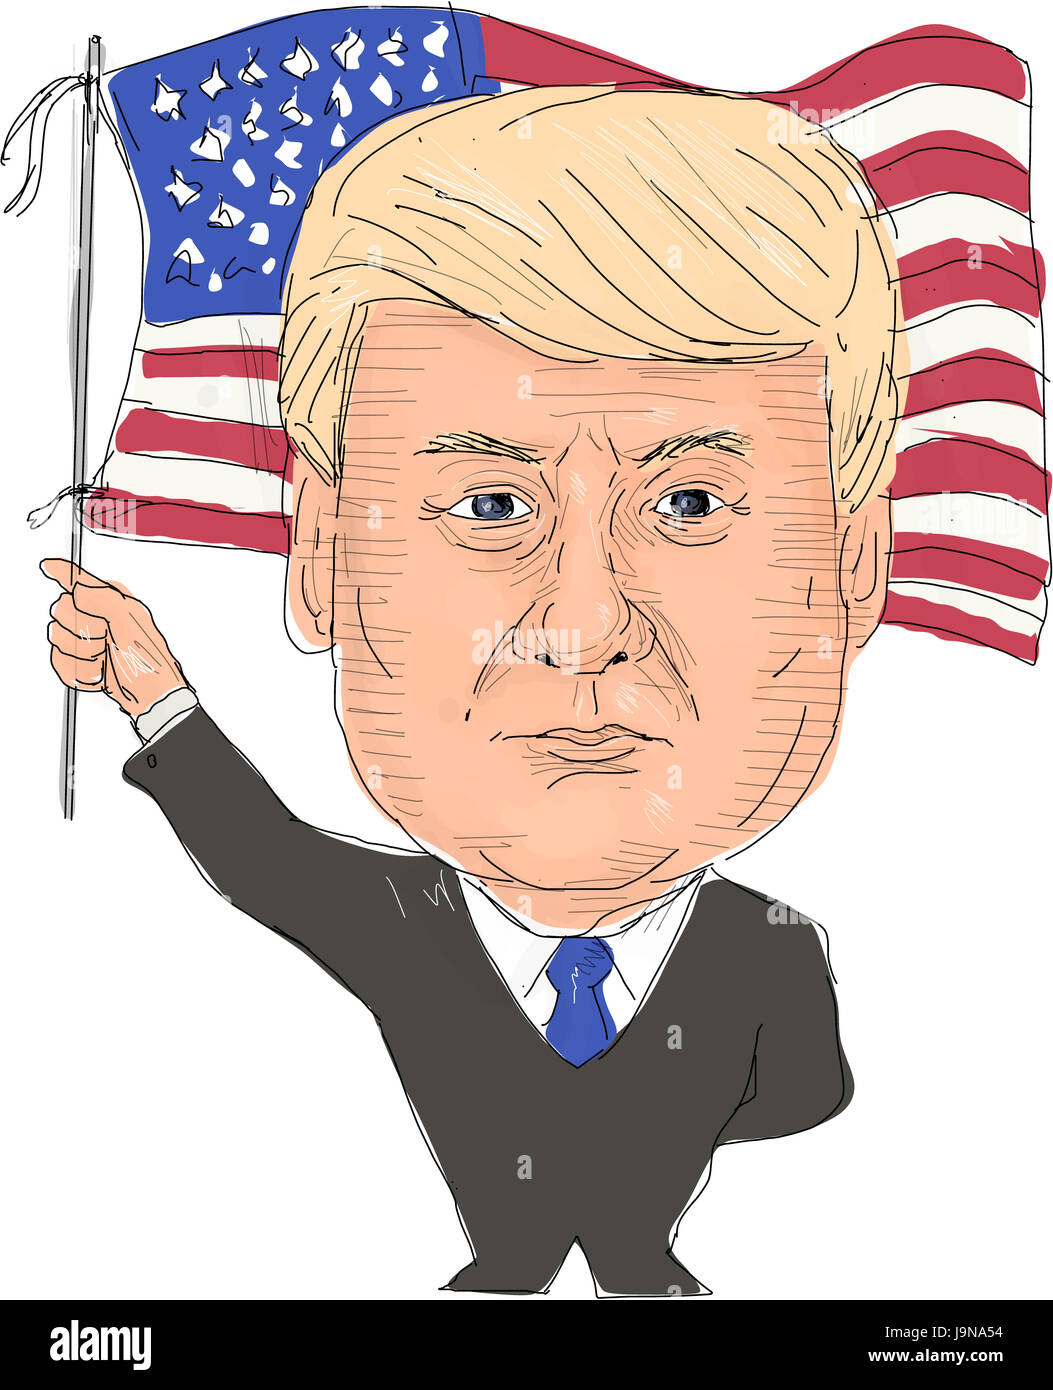 2 giugno 2017: stile acquerello illustrazione di Donald Trump, Presidente degli Stati Uniti d'America sventola bandiera visto dal lato anteriore impostato su isolata w Foto Stock